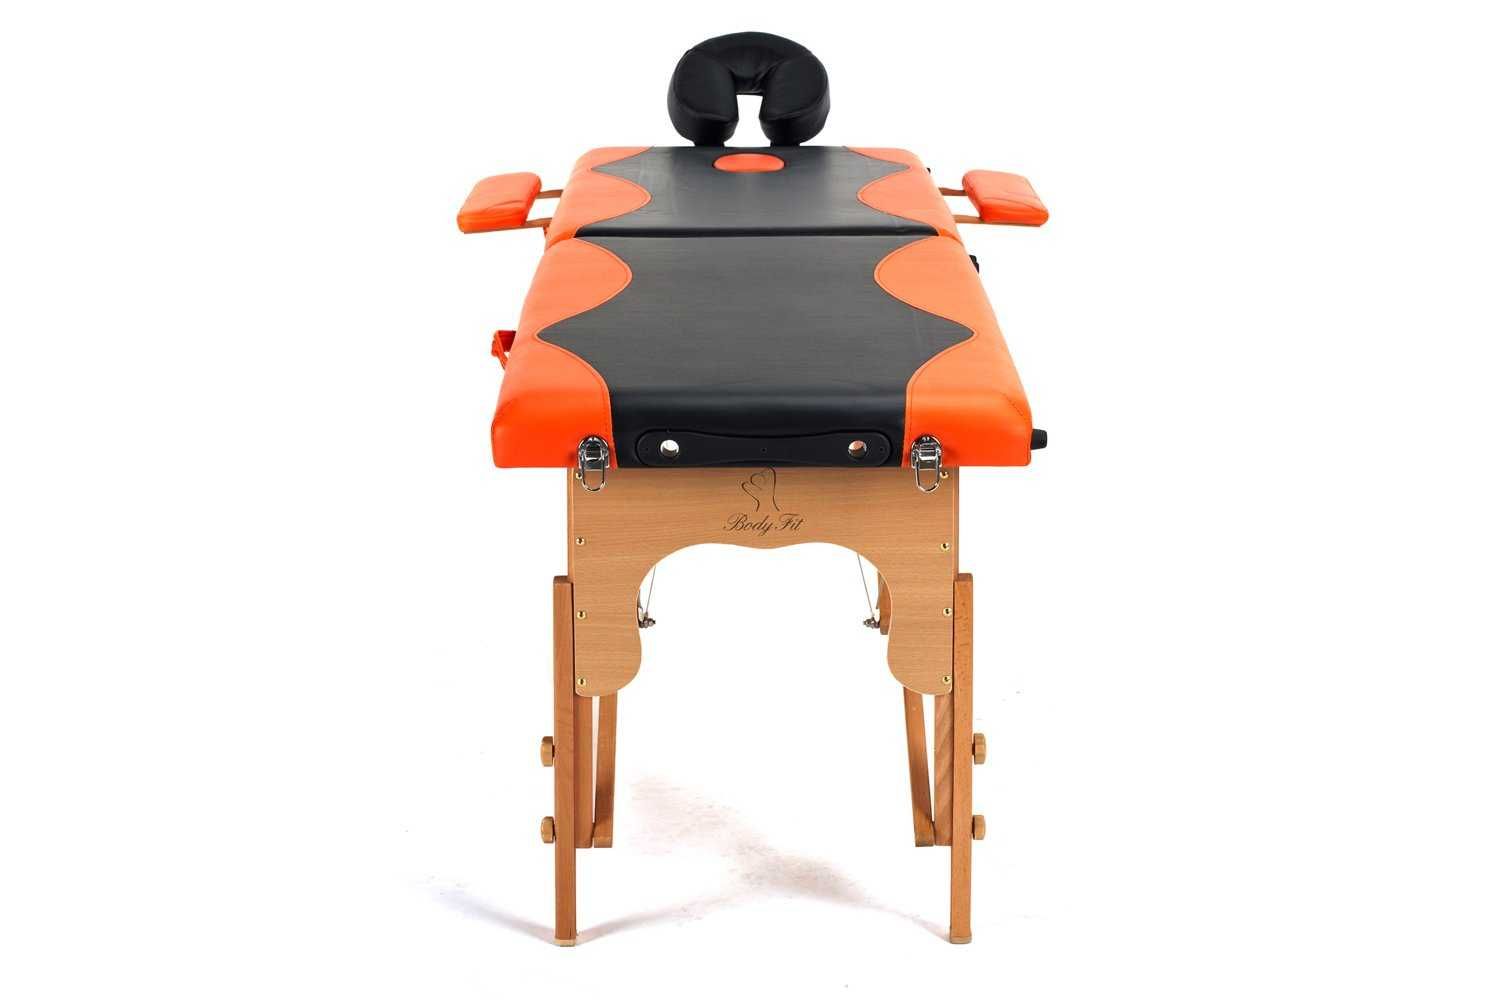 Stół, łóżko do masażu 2-segmentowe drewniane - czarno pomarańczowe